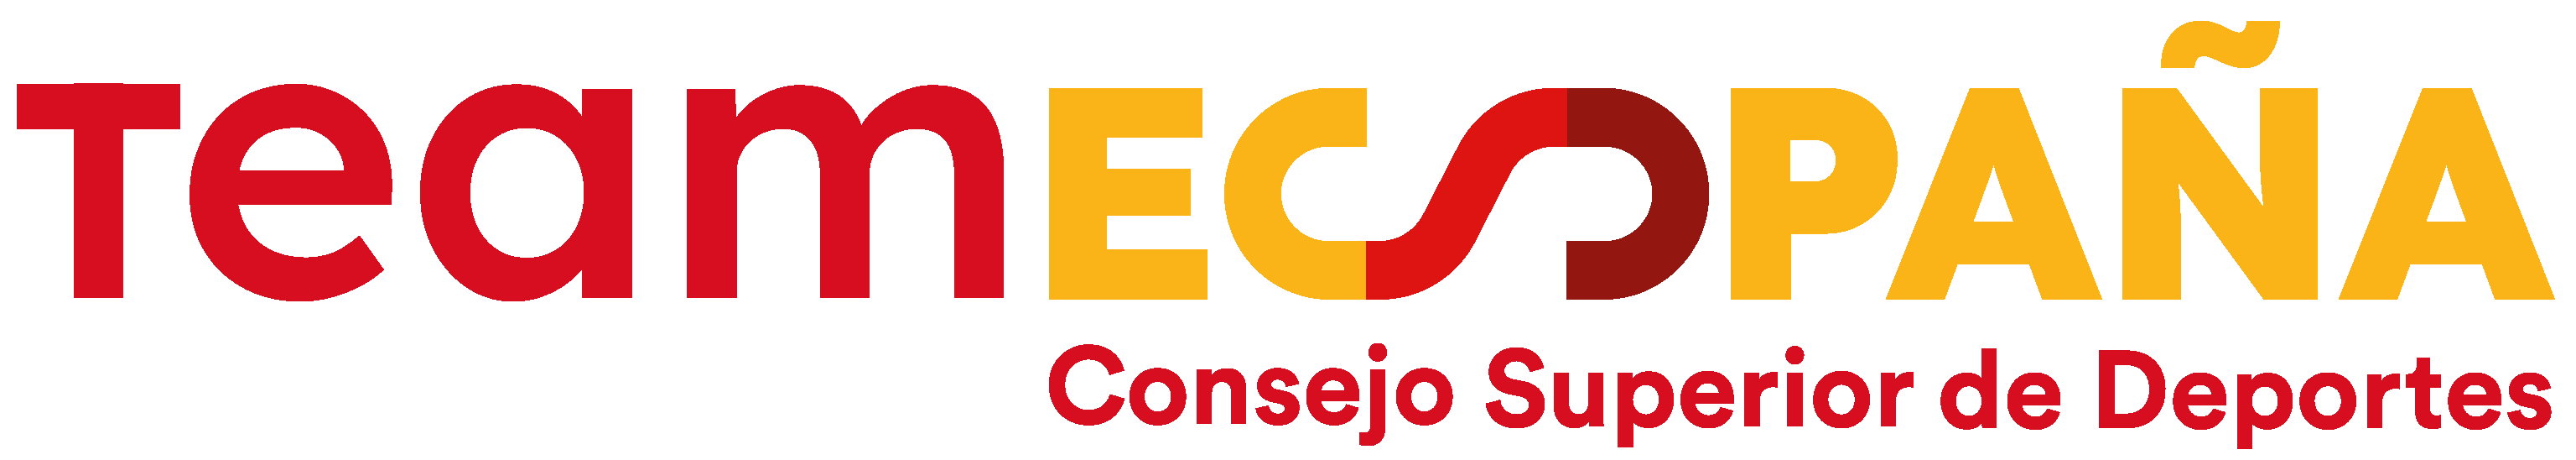 logo Team España